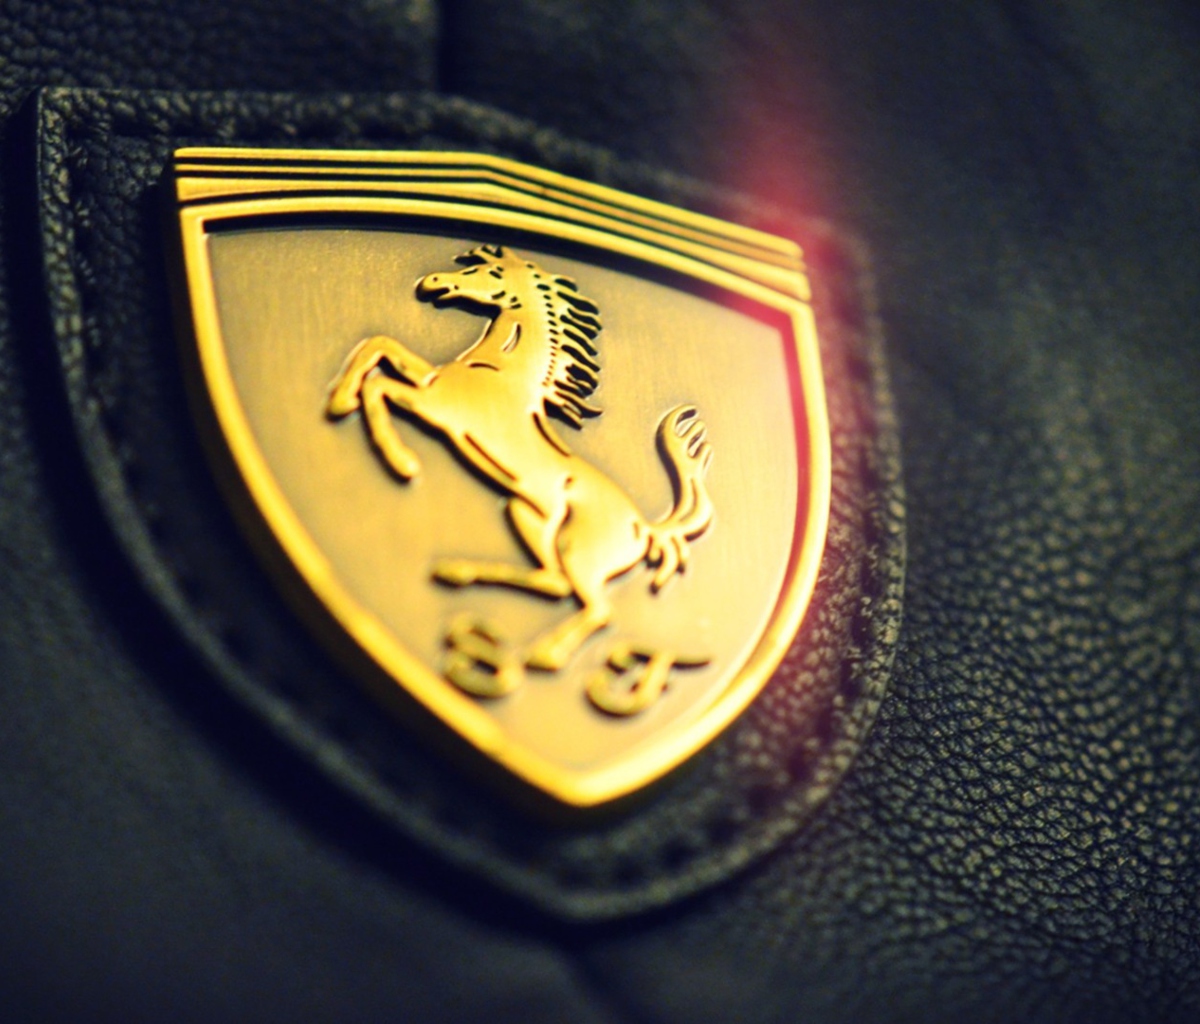 Das Ferrari Emblem Wallpaper 1200x1024